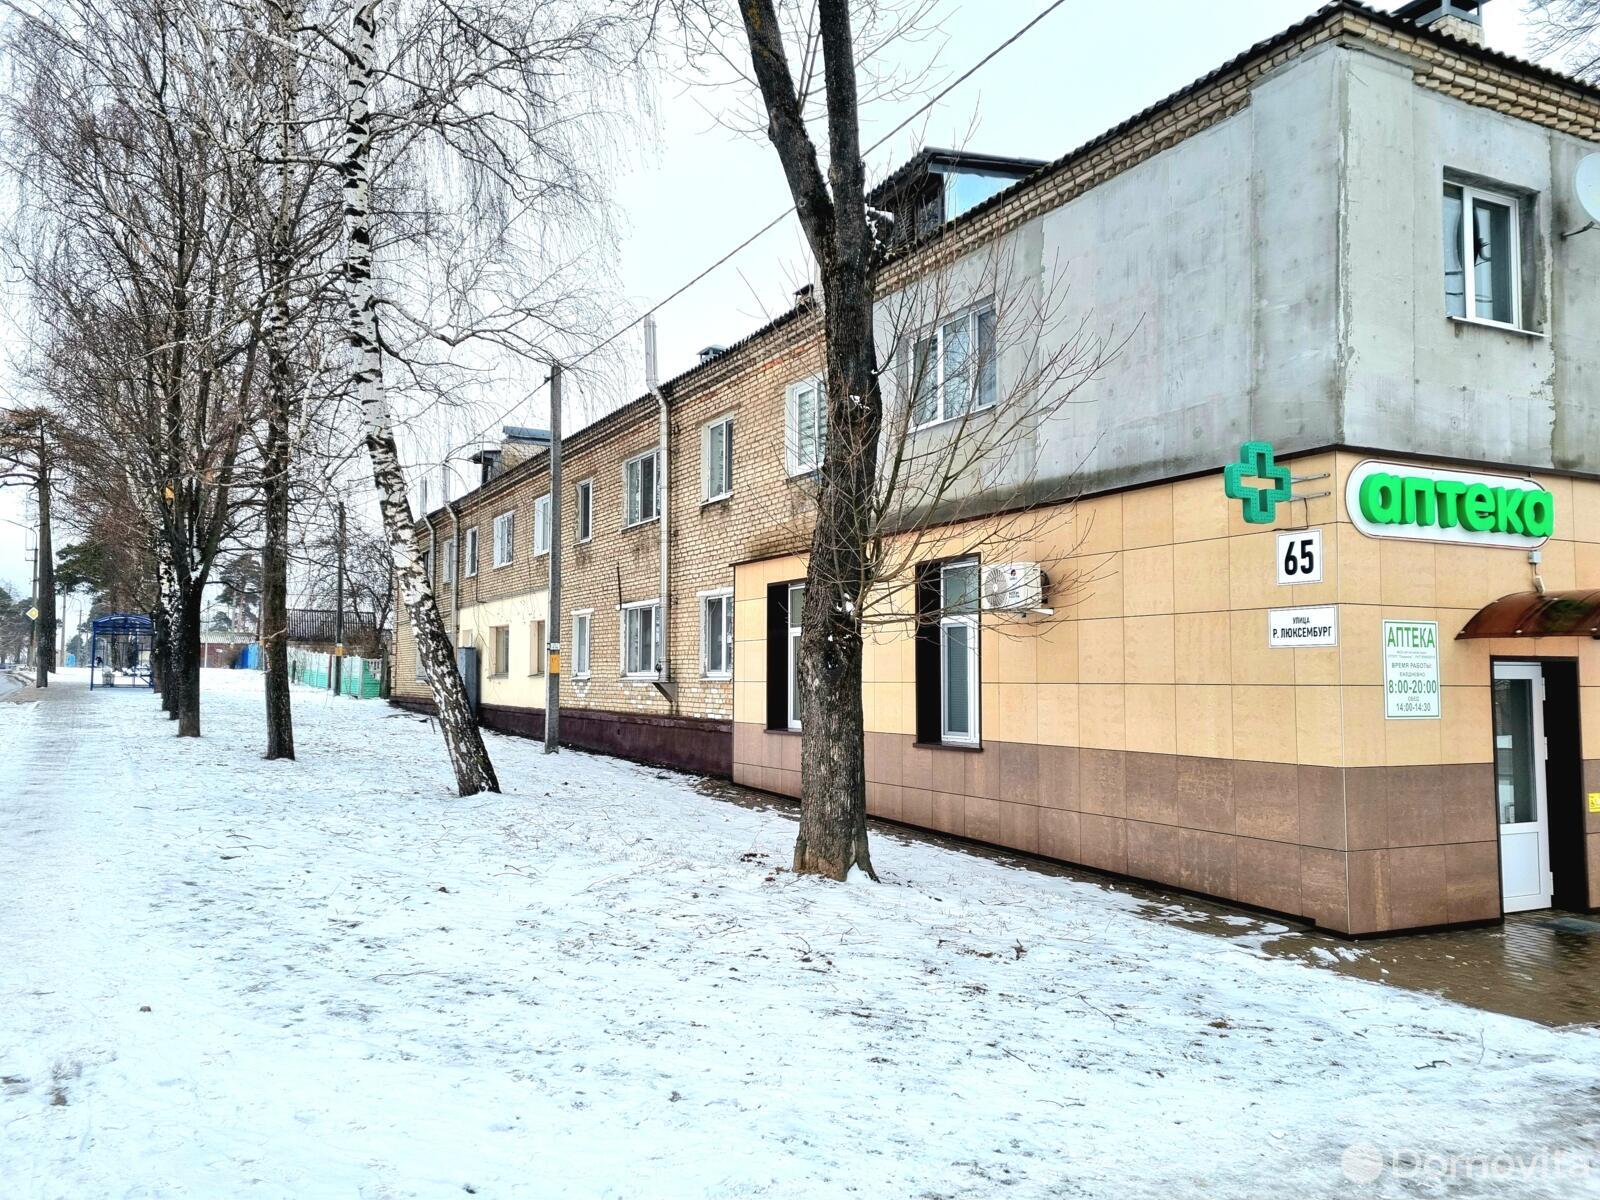 Цена продажи квартиры, Борисов, ул. Розы Люксембург, д. 65